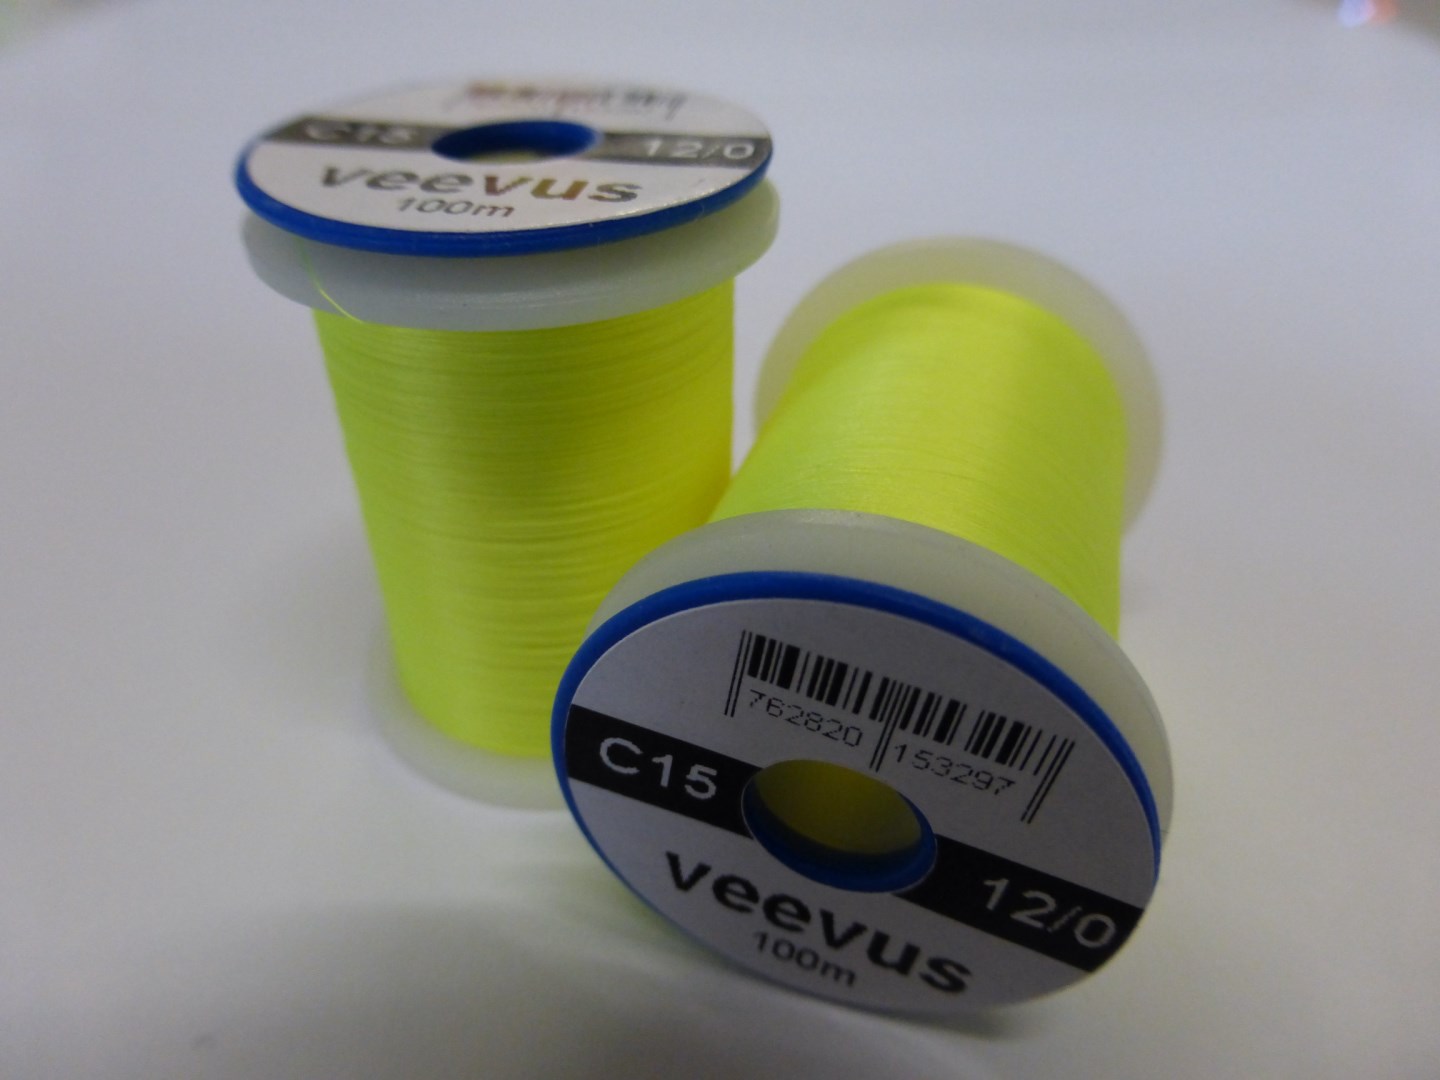 Veevus 12/0 Fluo Yellow C15